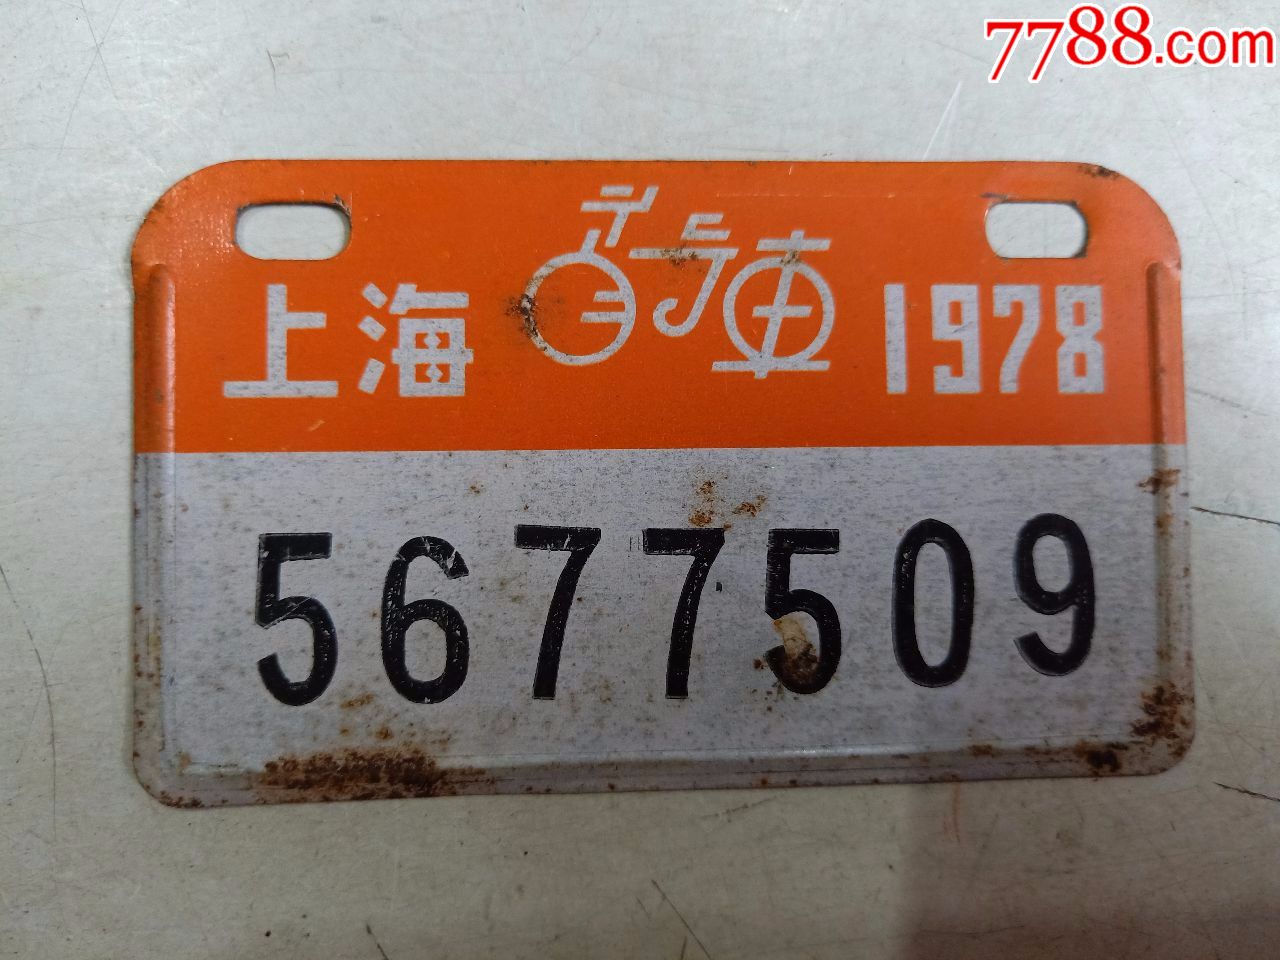 上海自行车1978(车牌)